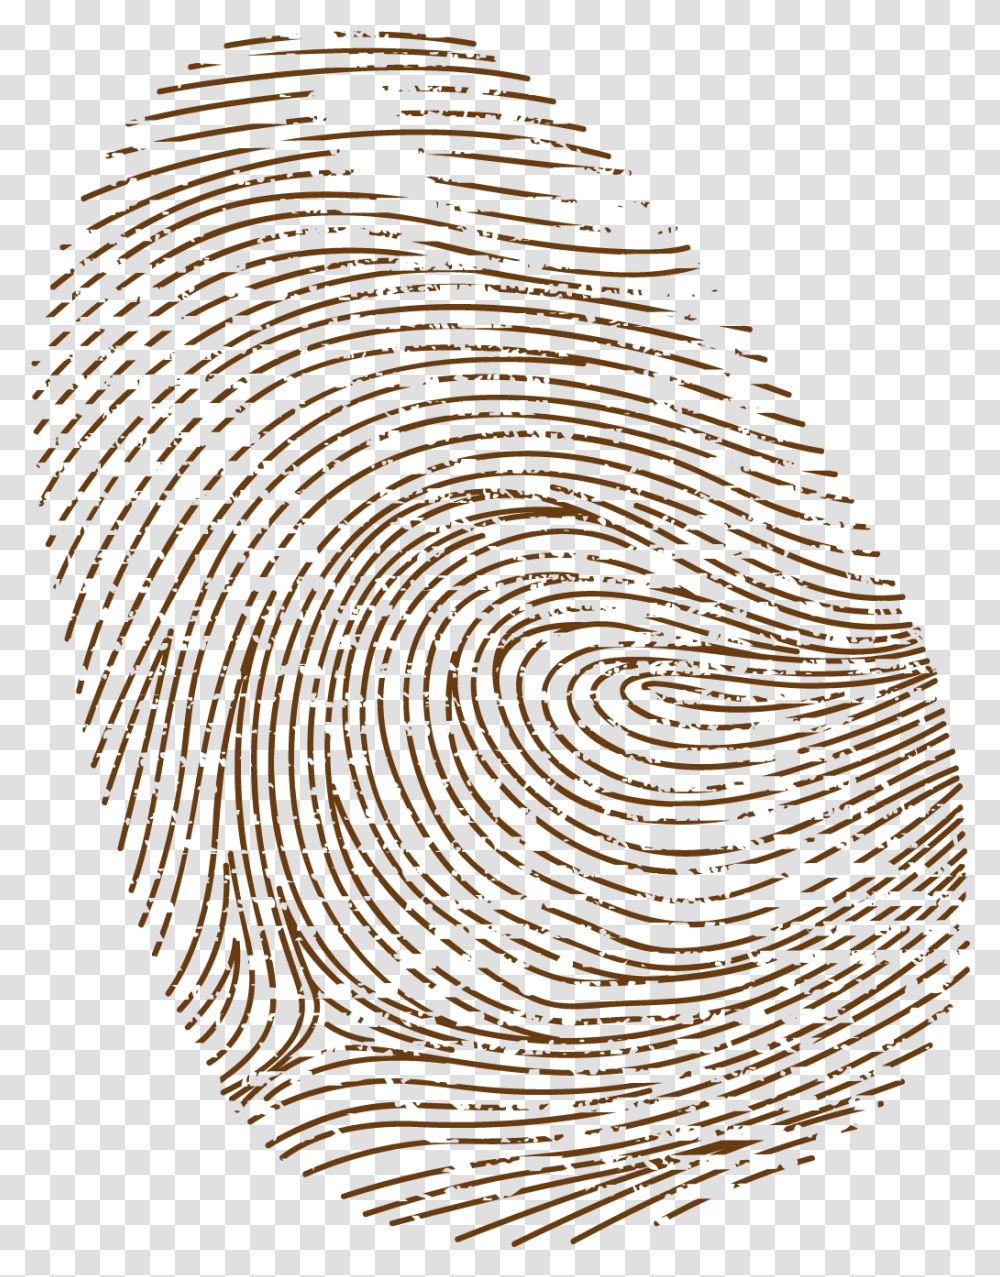 Brown Fingerprint Image With Brown Fingerprint, Rug, Spiral, Maze, Labyrinth Transparent Png